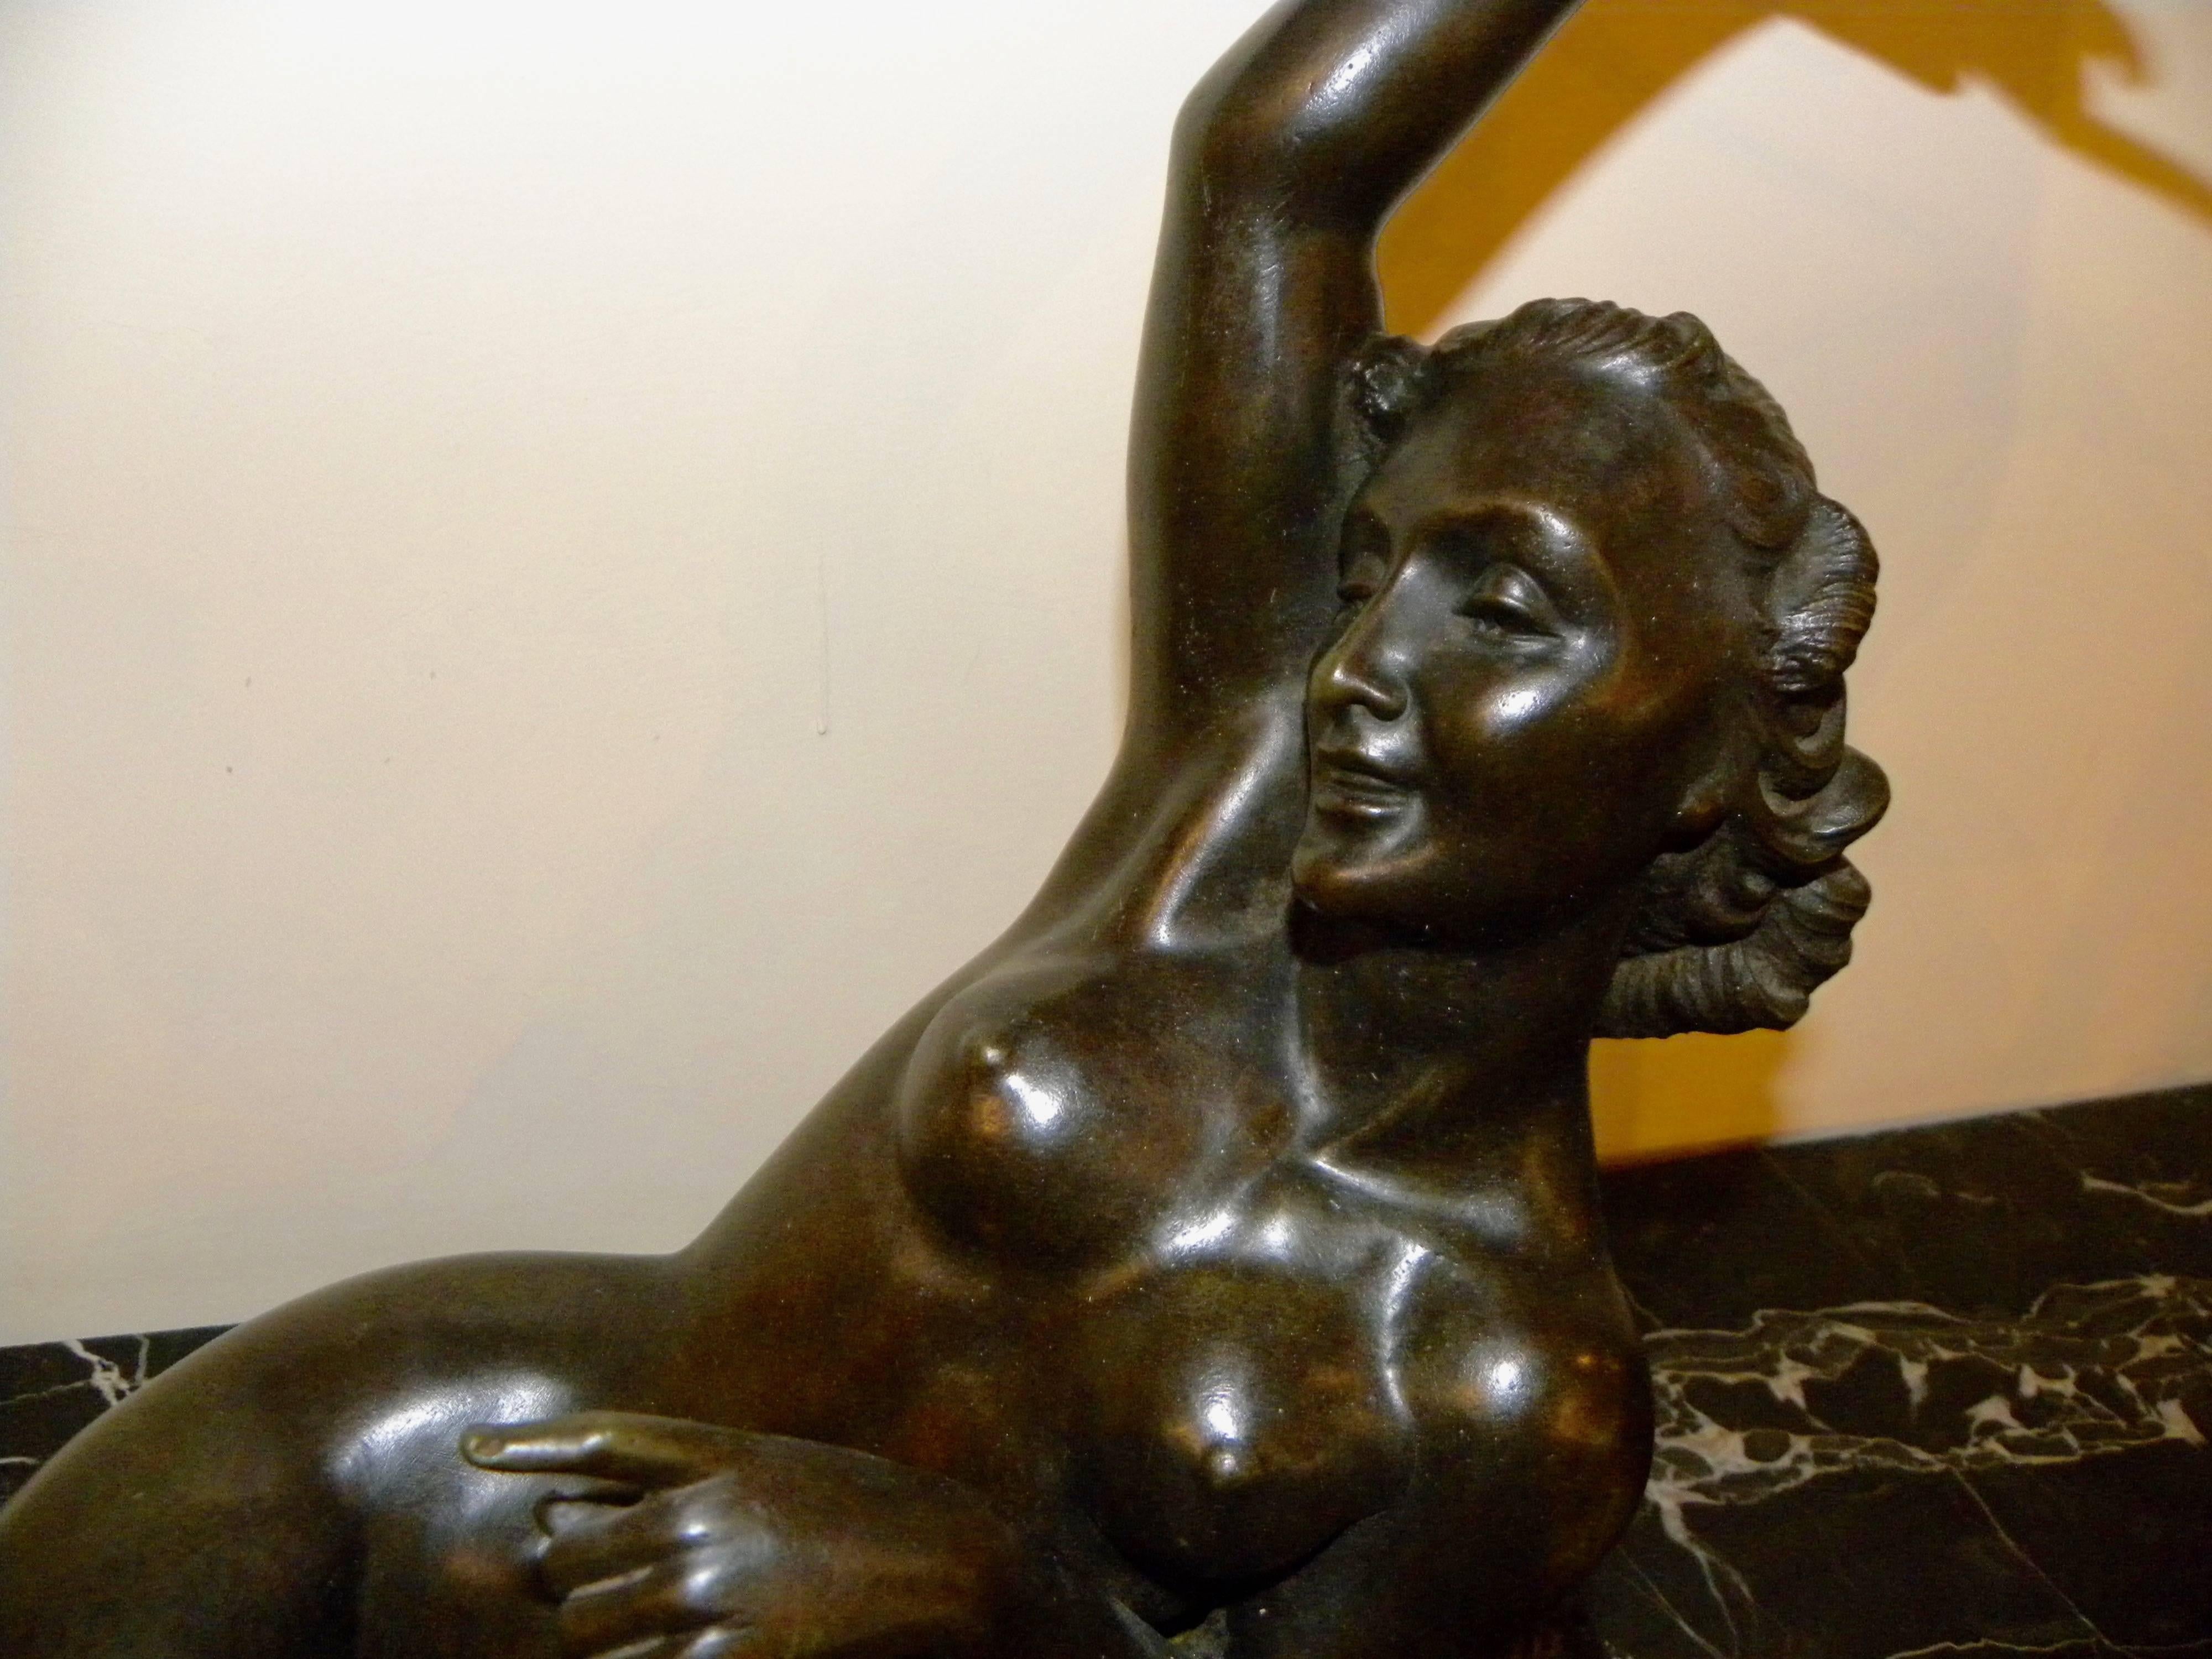 Eine liegende Akt-Bronzeskulptur von Salvatore Melani aus der Zeit des Art déco, die am Ende seiner Karriere entstand, die in den frühen 1920er Jahren begann und 1934 im Alter von 32 Jahren endete. Die heitere und sinnliche Pose wird durch ihre